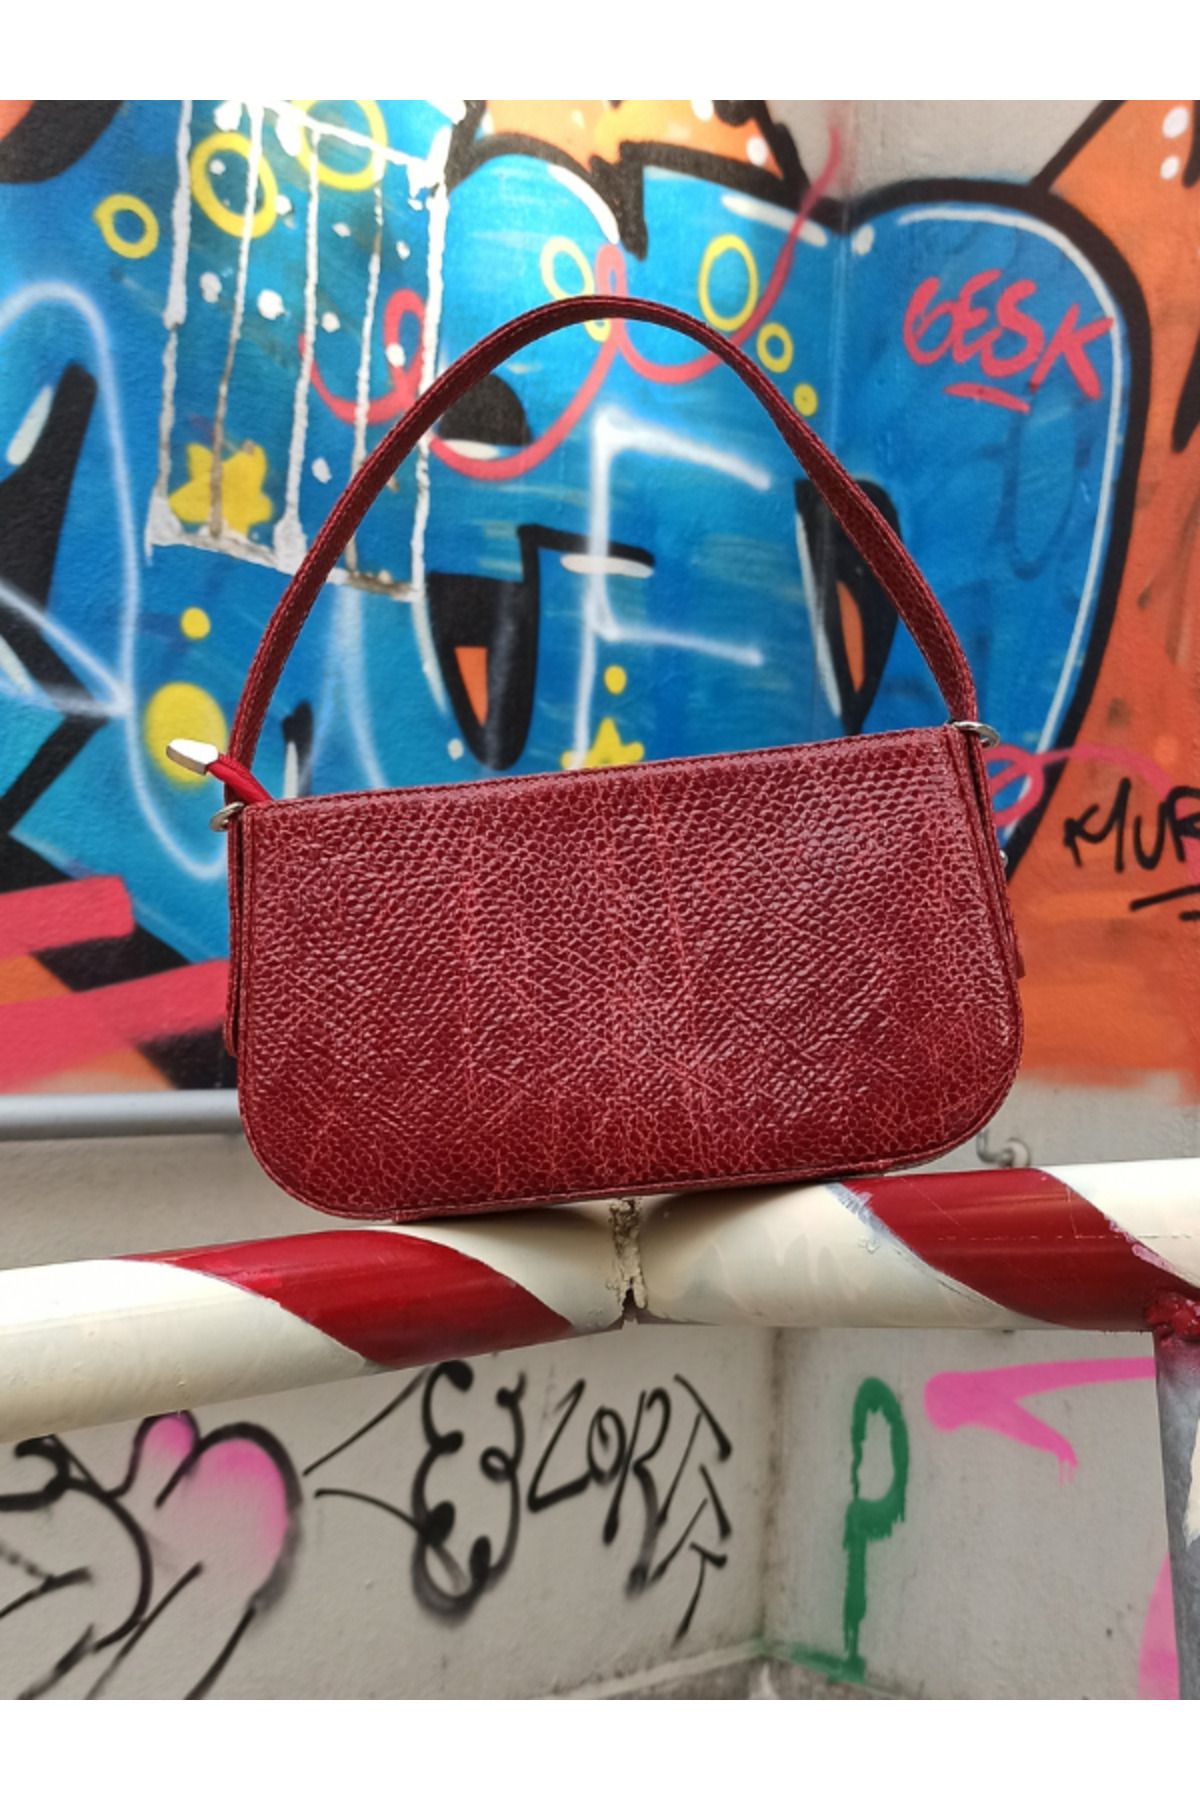 Pinkylola İkon model Bordo kırmızı  yılan baskılı hakıkı derı degrade  askı detaylı Omuz çantası